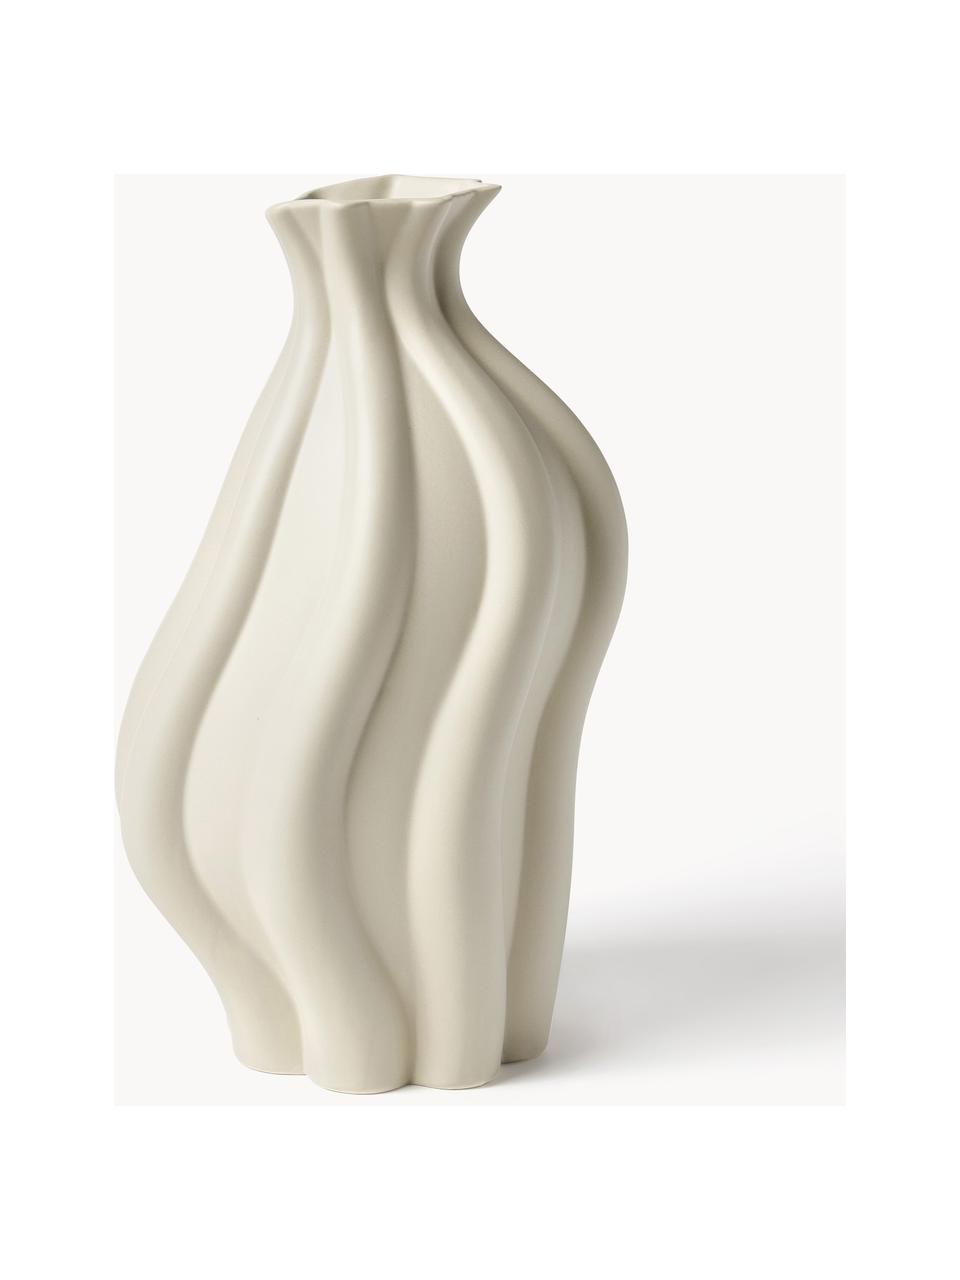 Váza z keramiky Blom, V 33 cm, Keramika, Béžová, Š 19 x V 33 cm